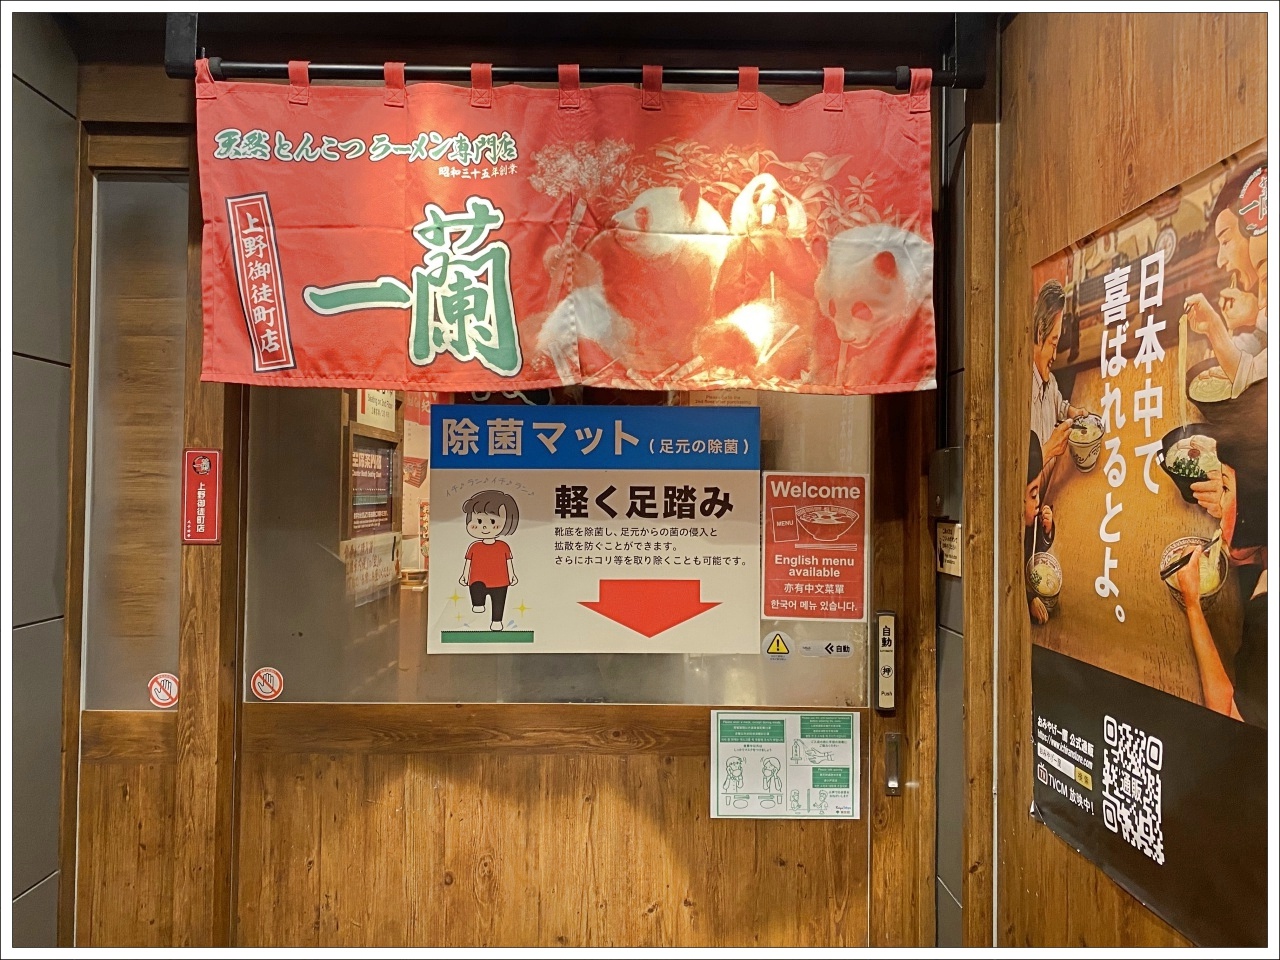 【東京拉麵】一蘭拉麵上野御徒町 ，疫情過後的一蘭，連營業時間都變了 - 一蘭拉麵營業時間, 上野一蘭拉麵, 東京一蘭拉麵 - 壞波妞の旅行食踨